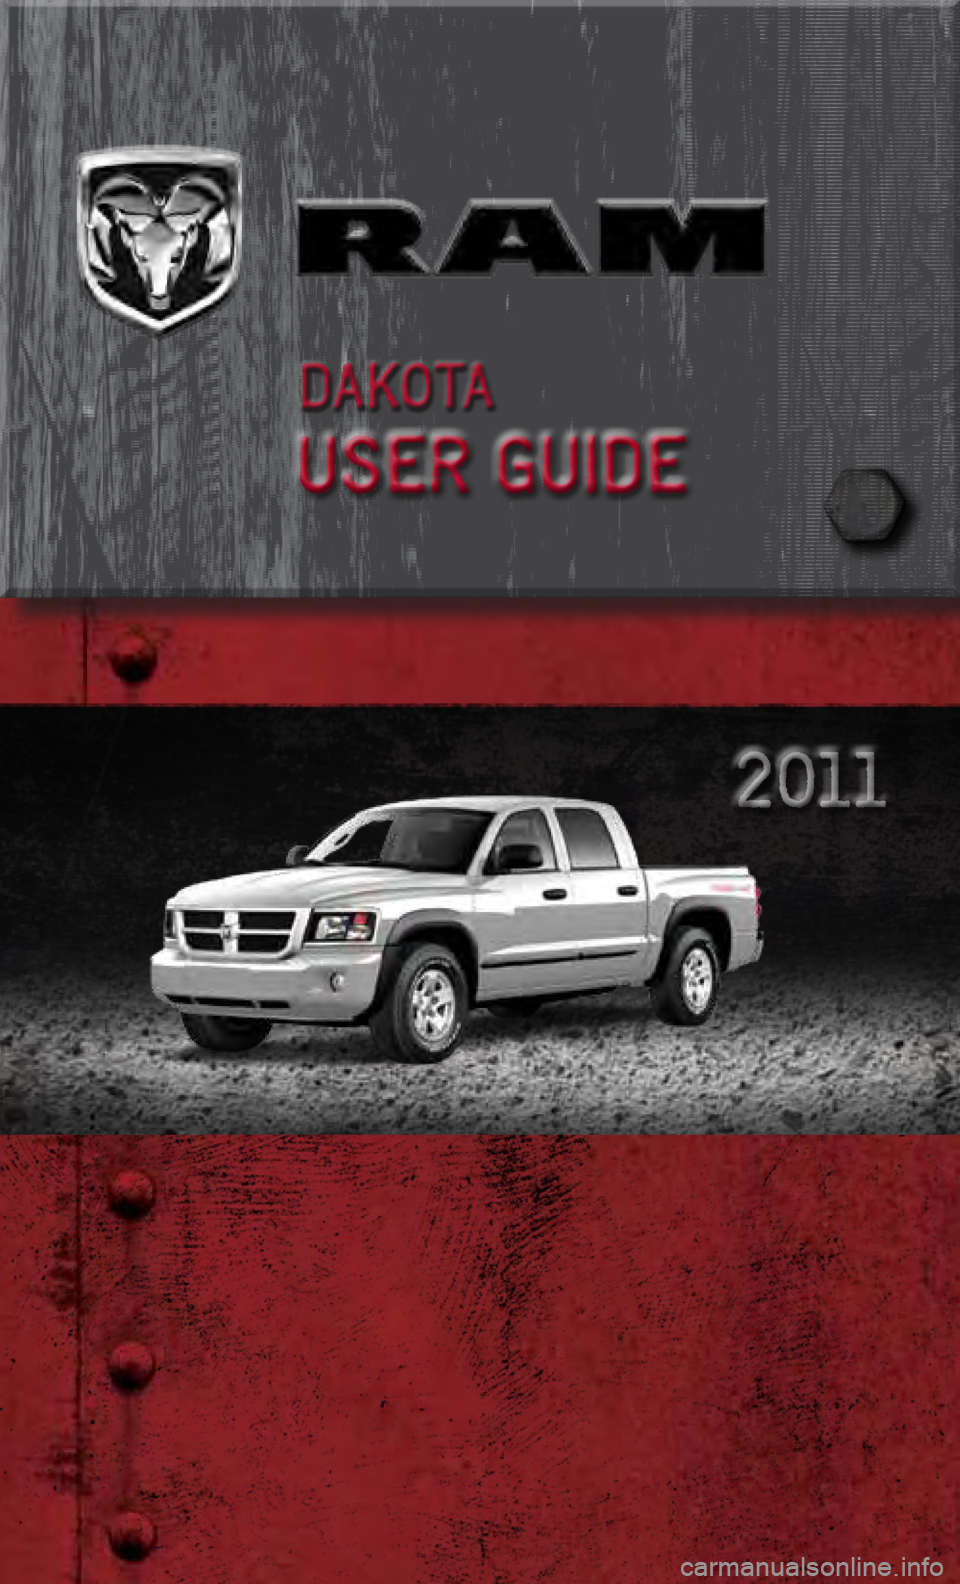 DODGE DAKOTA 2011 3.G User Guide             
0048 
0025 
00370003  